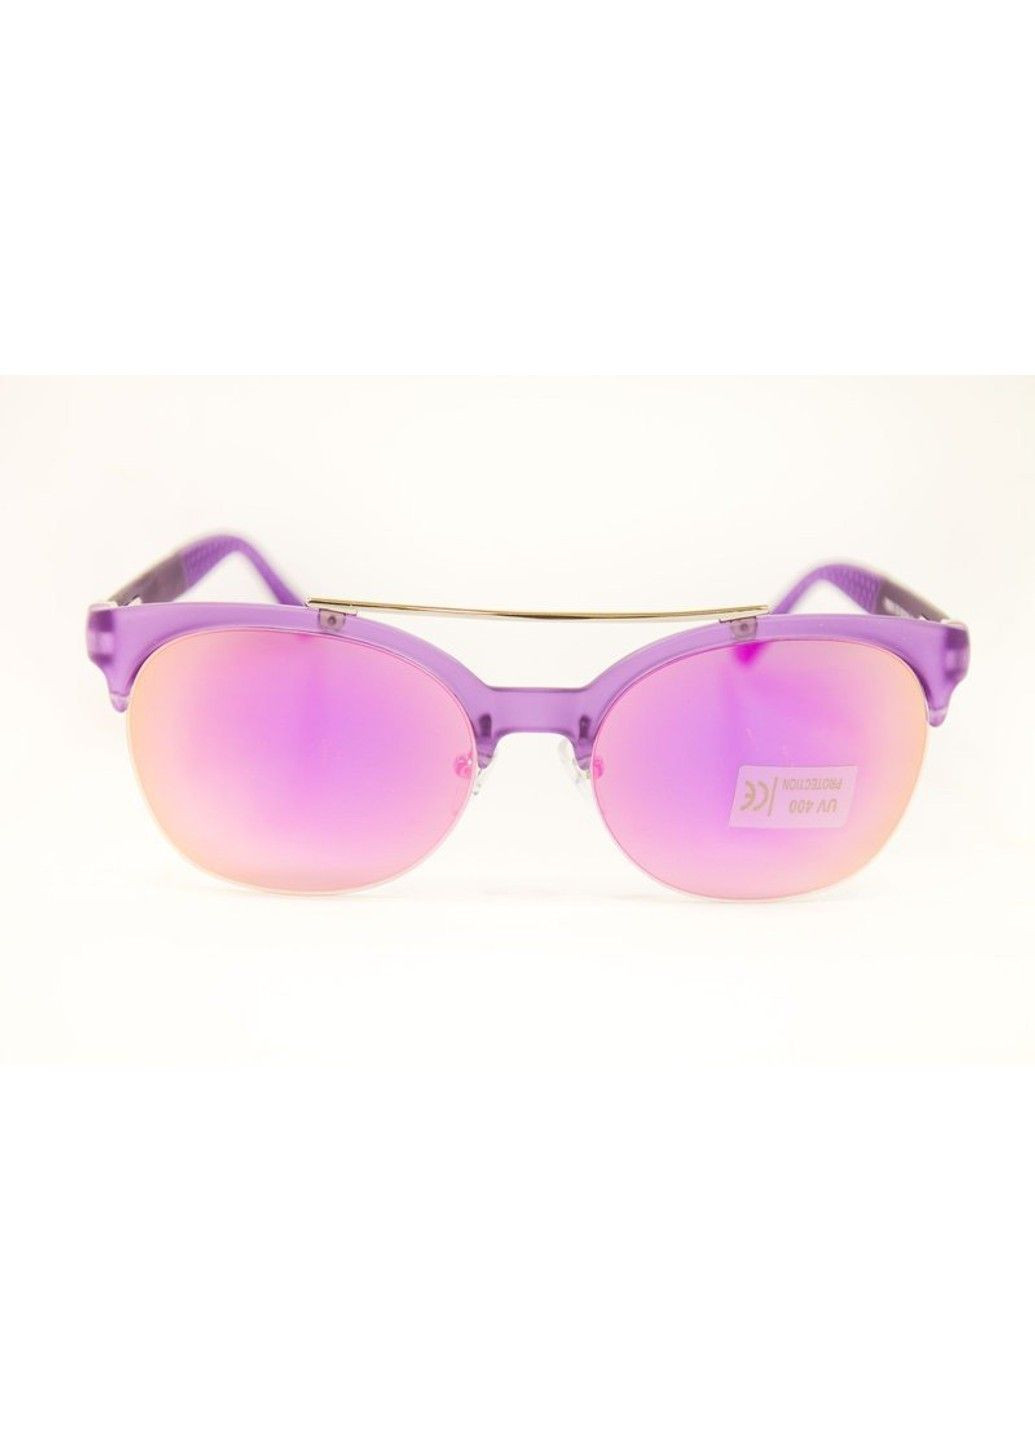 Солнцезащитные поликарбонатные очки женские фиолетовые BR-S (291984104)